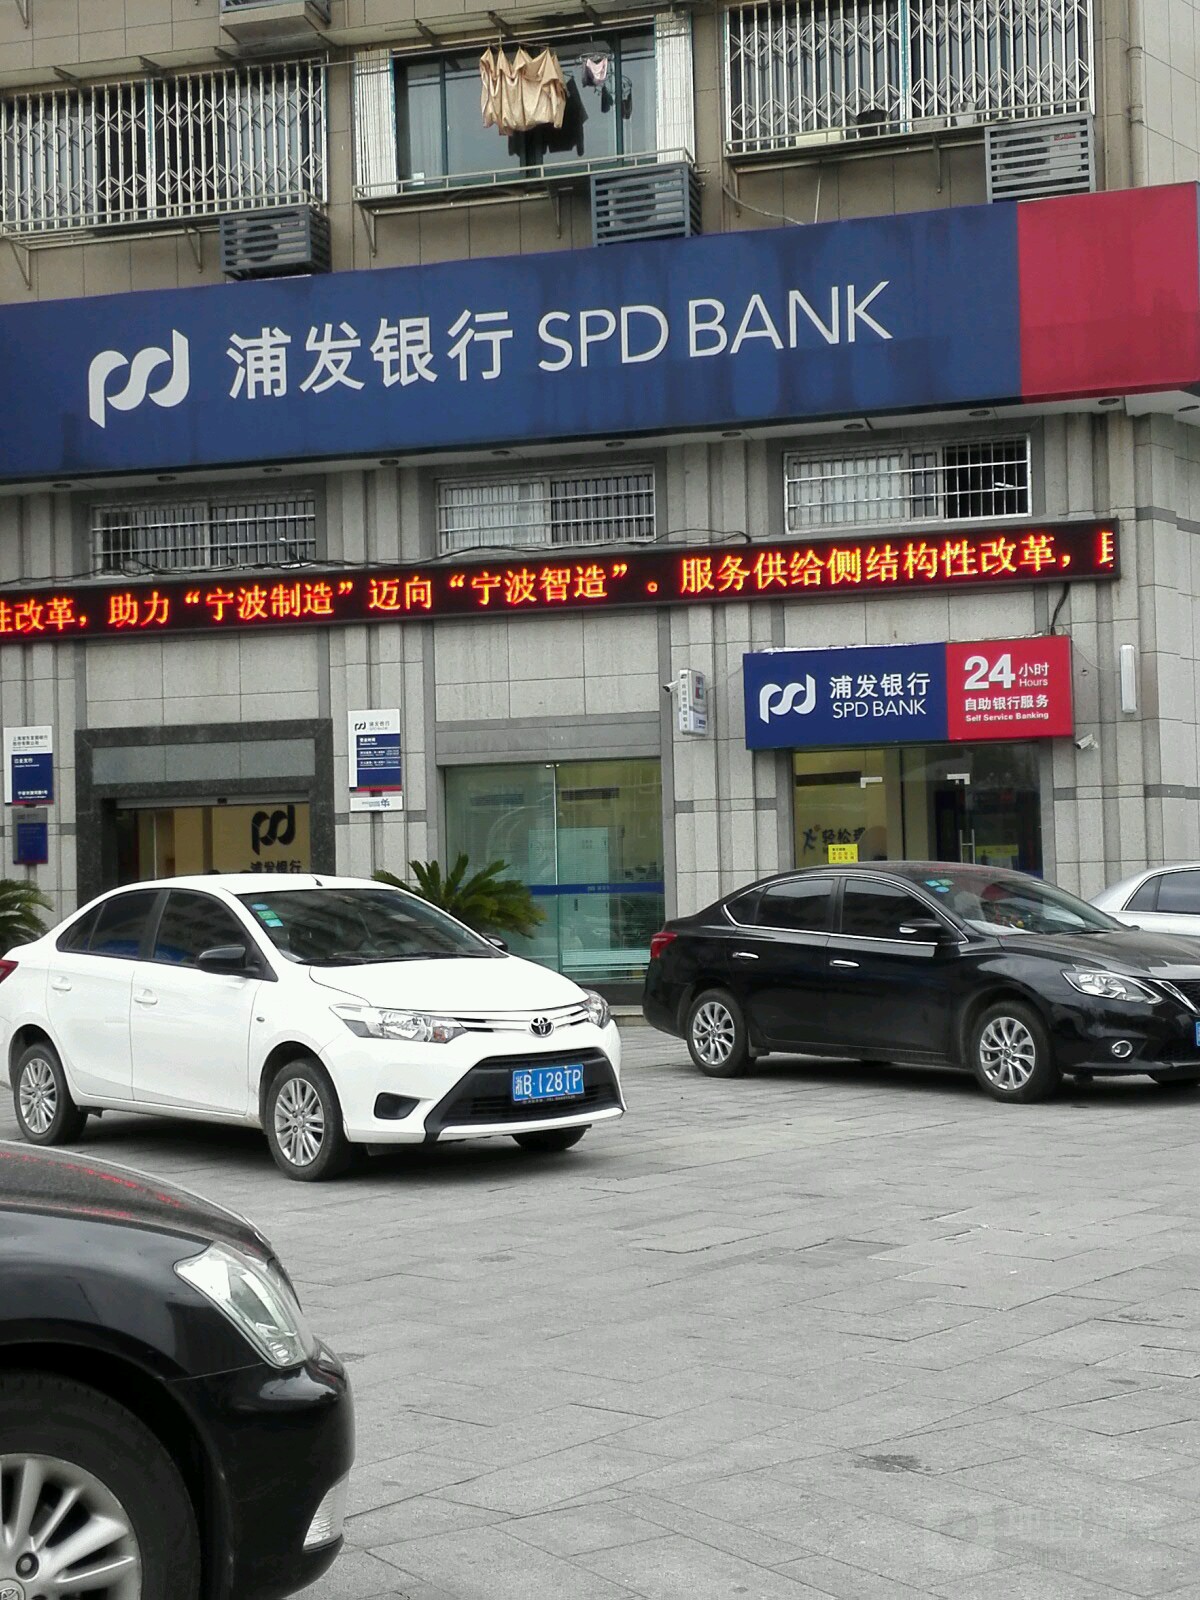 上海浦東發展銀行(江北支行)